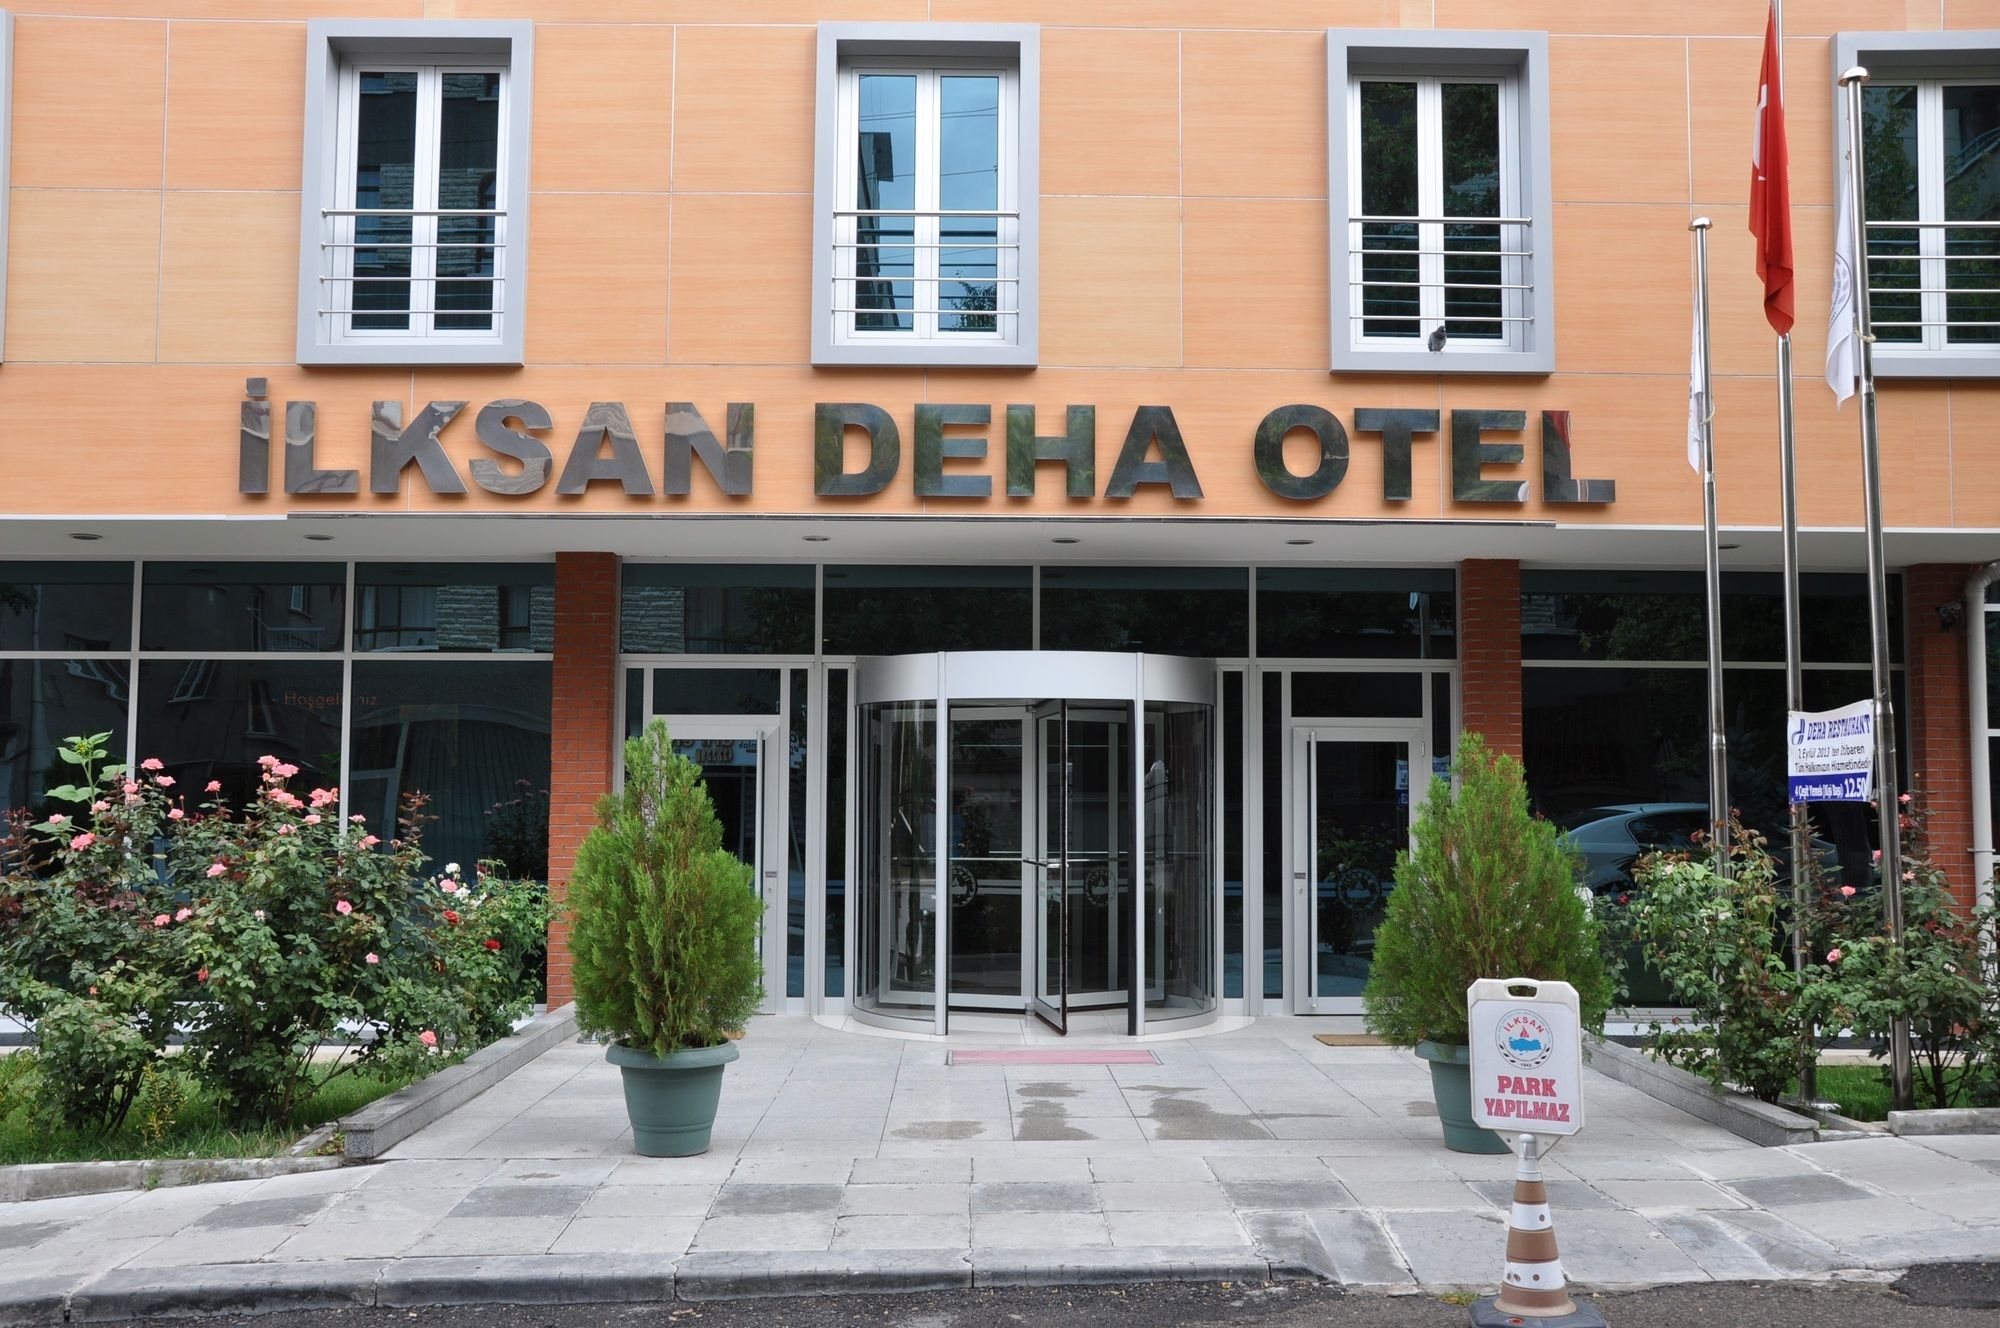 Ilksan Deha Otel (Ilksan Deha Hotel)